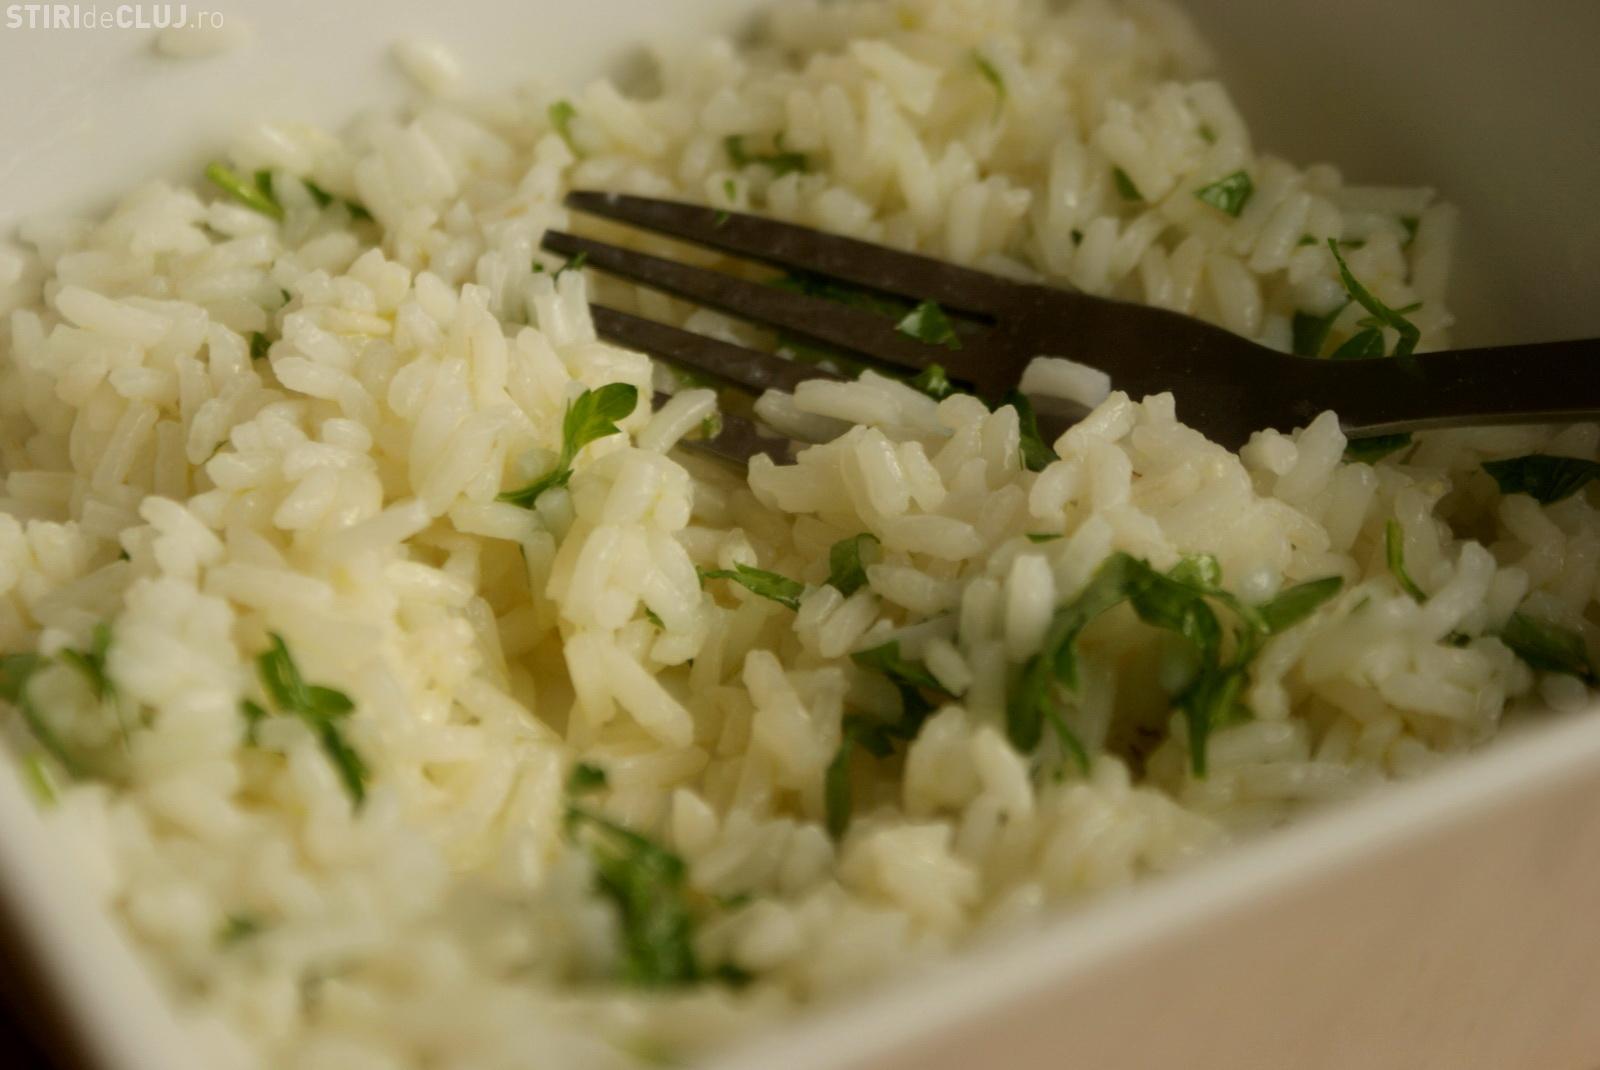 Dieta cu orez – 2 variante de regim-uri in cura de slabire cu orez